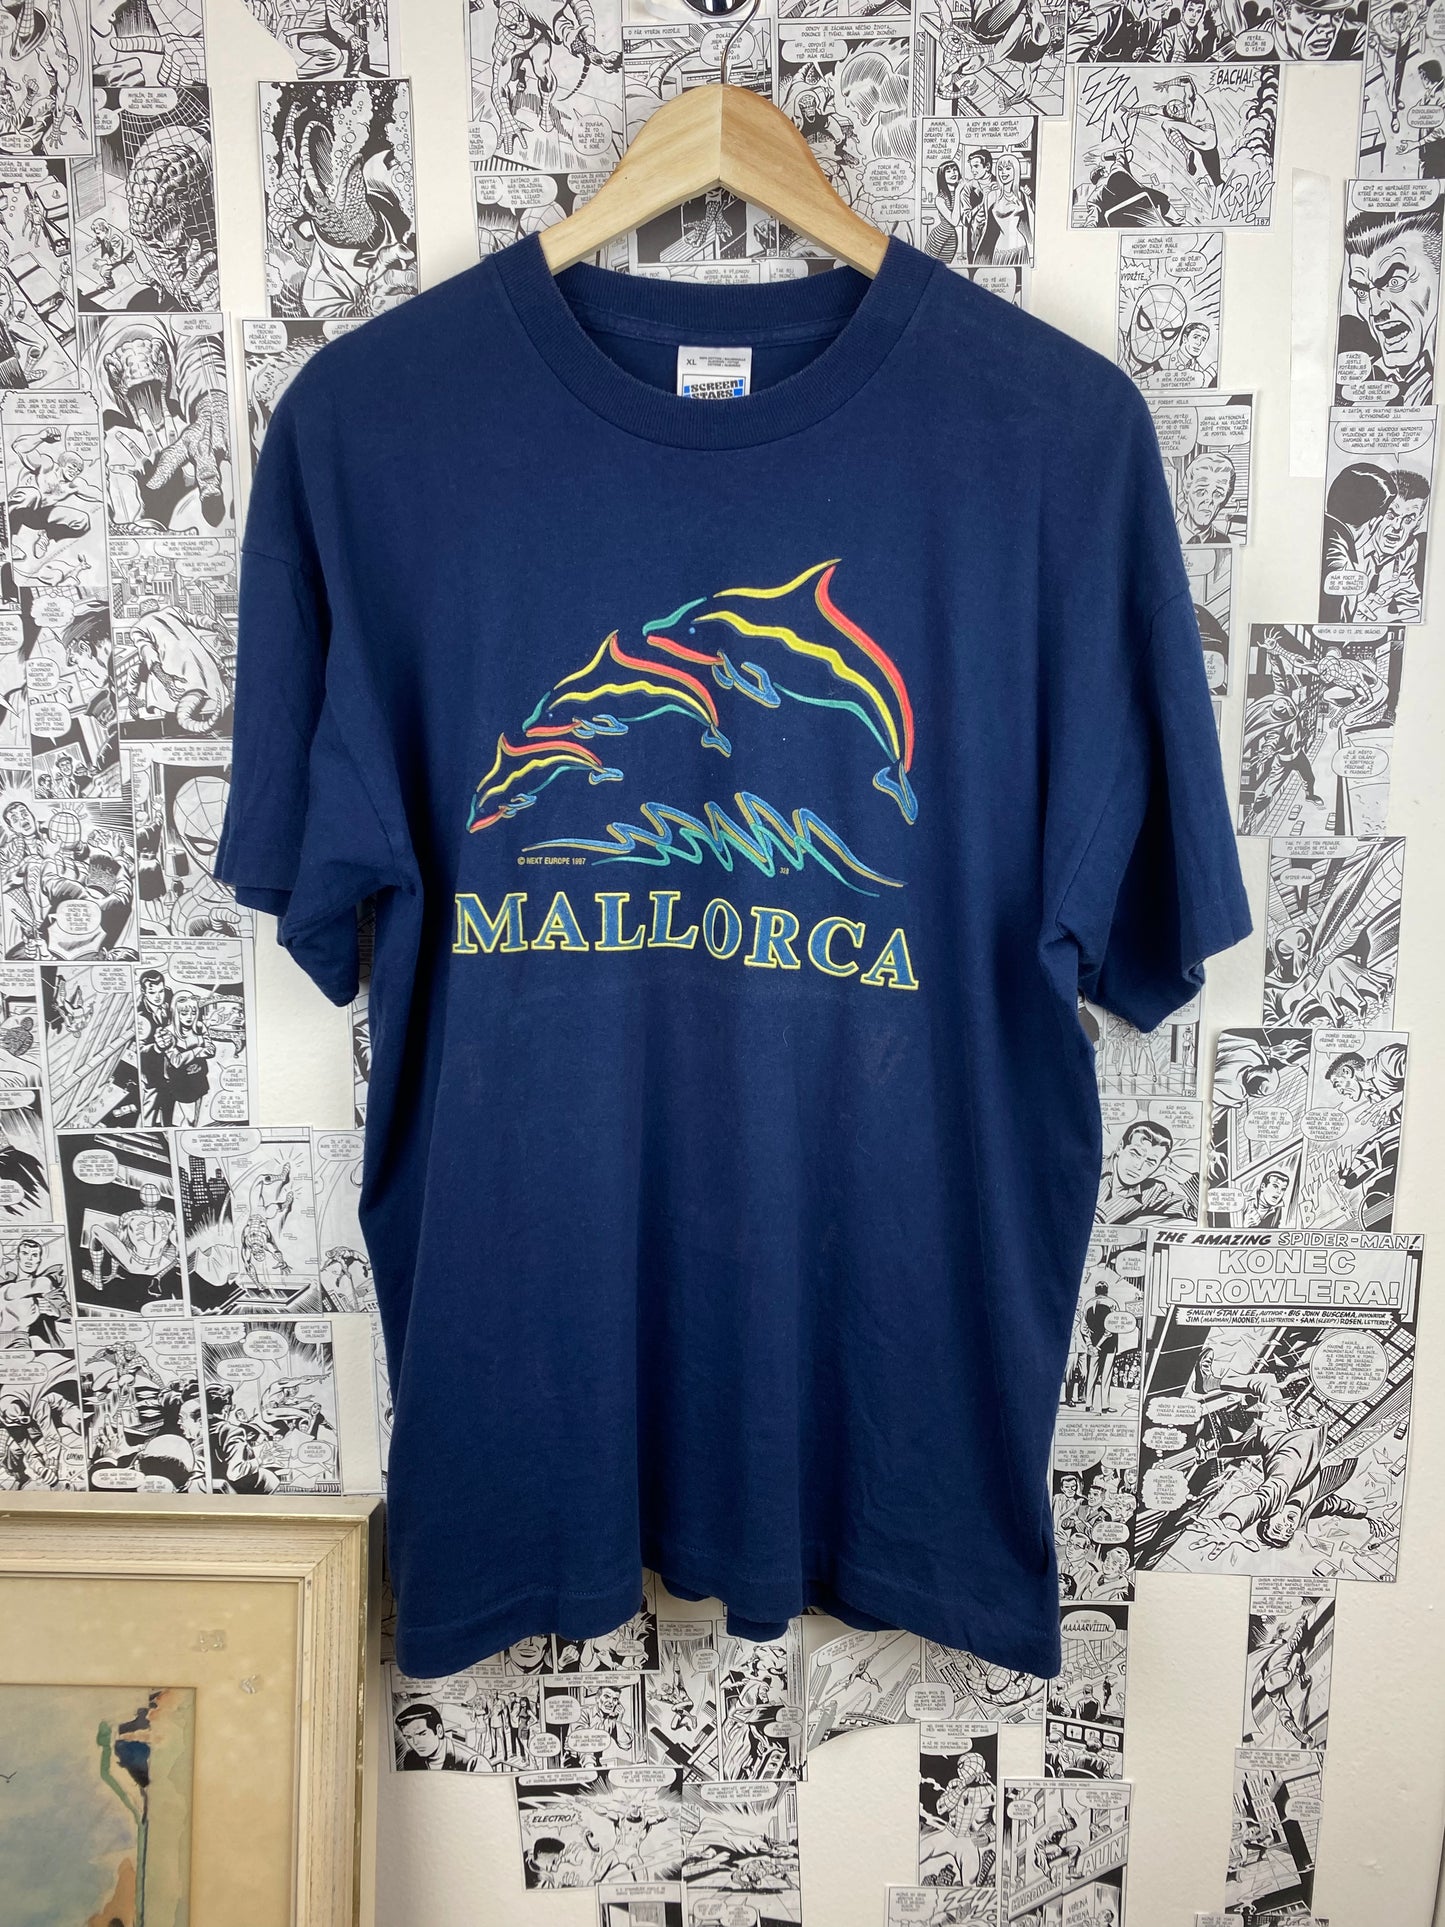 Vintage Mallorca 90s t-shirt - size XL